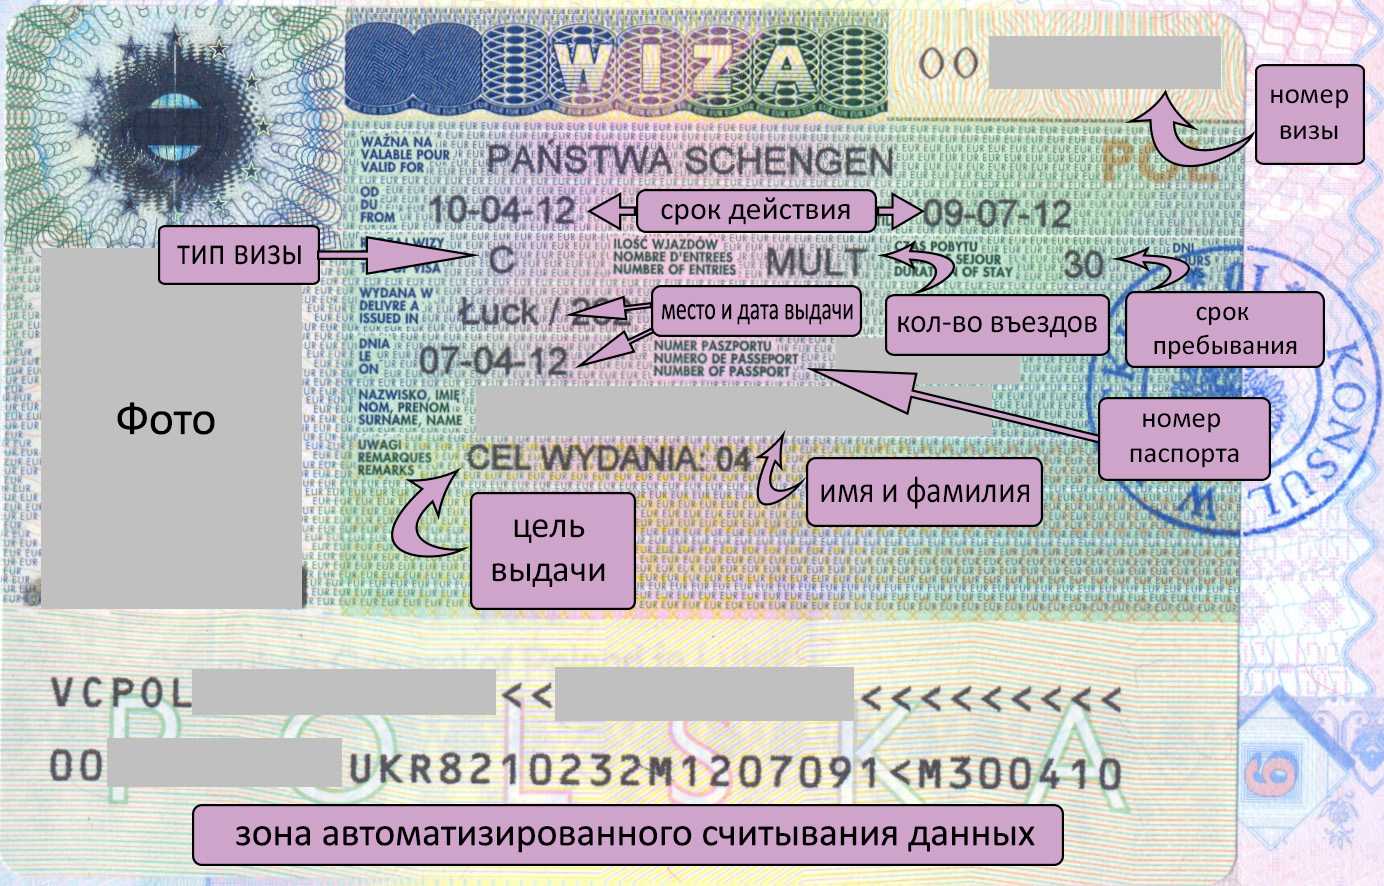 Виды шенгенской визы: правила оформления, сроки и стоимость, причины отказа, время пребывания